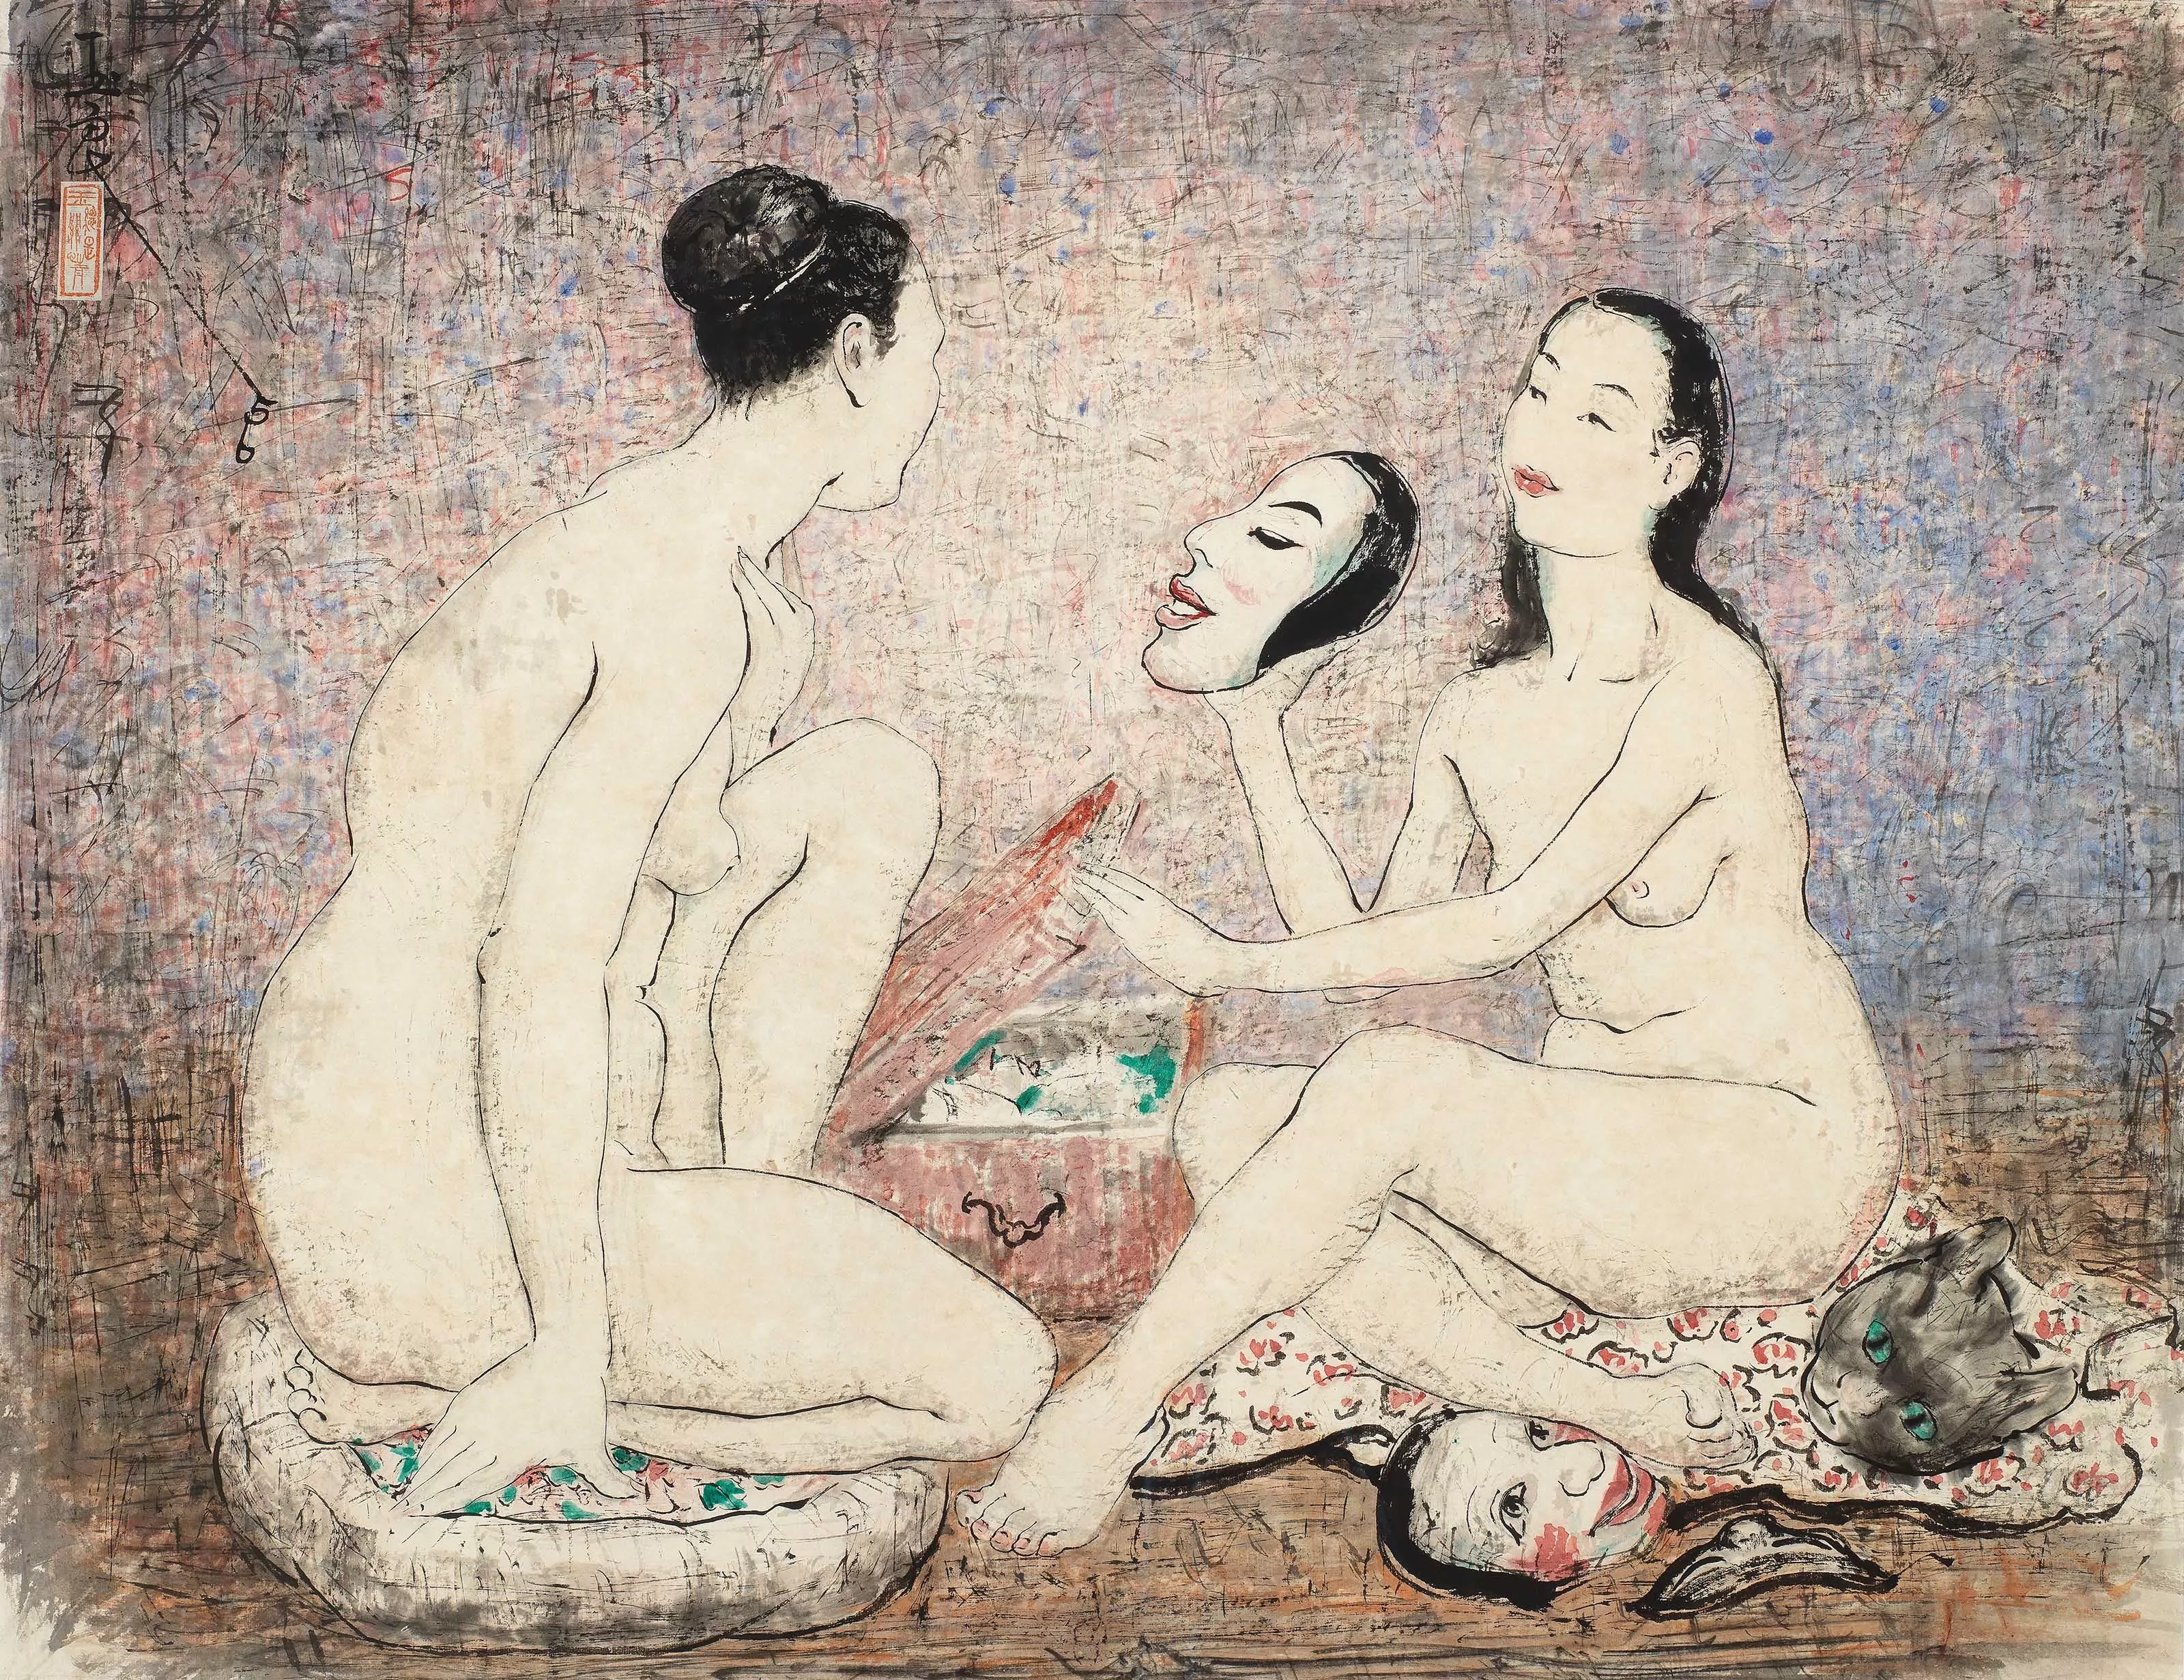 Nudes and Masks, Pan Yuliang